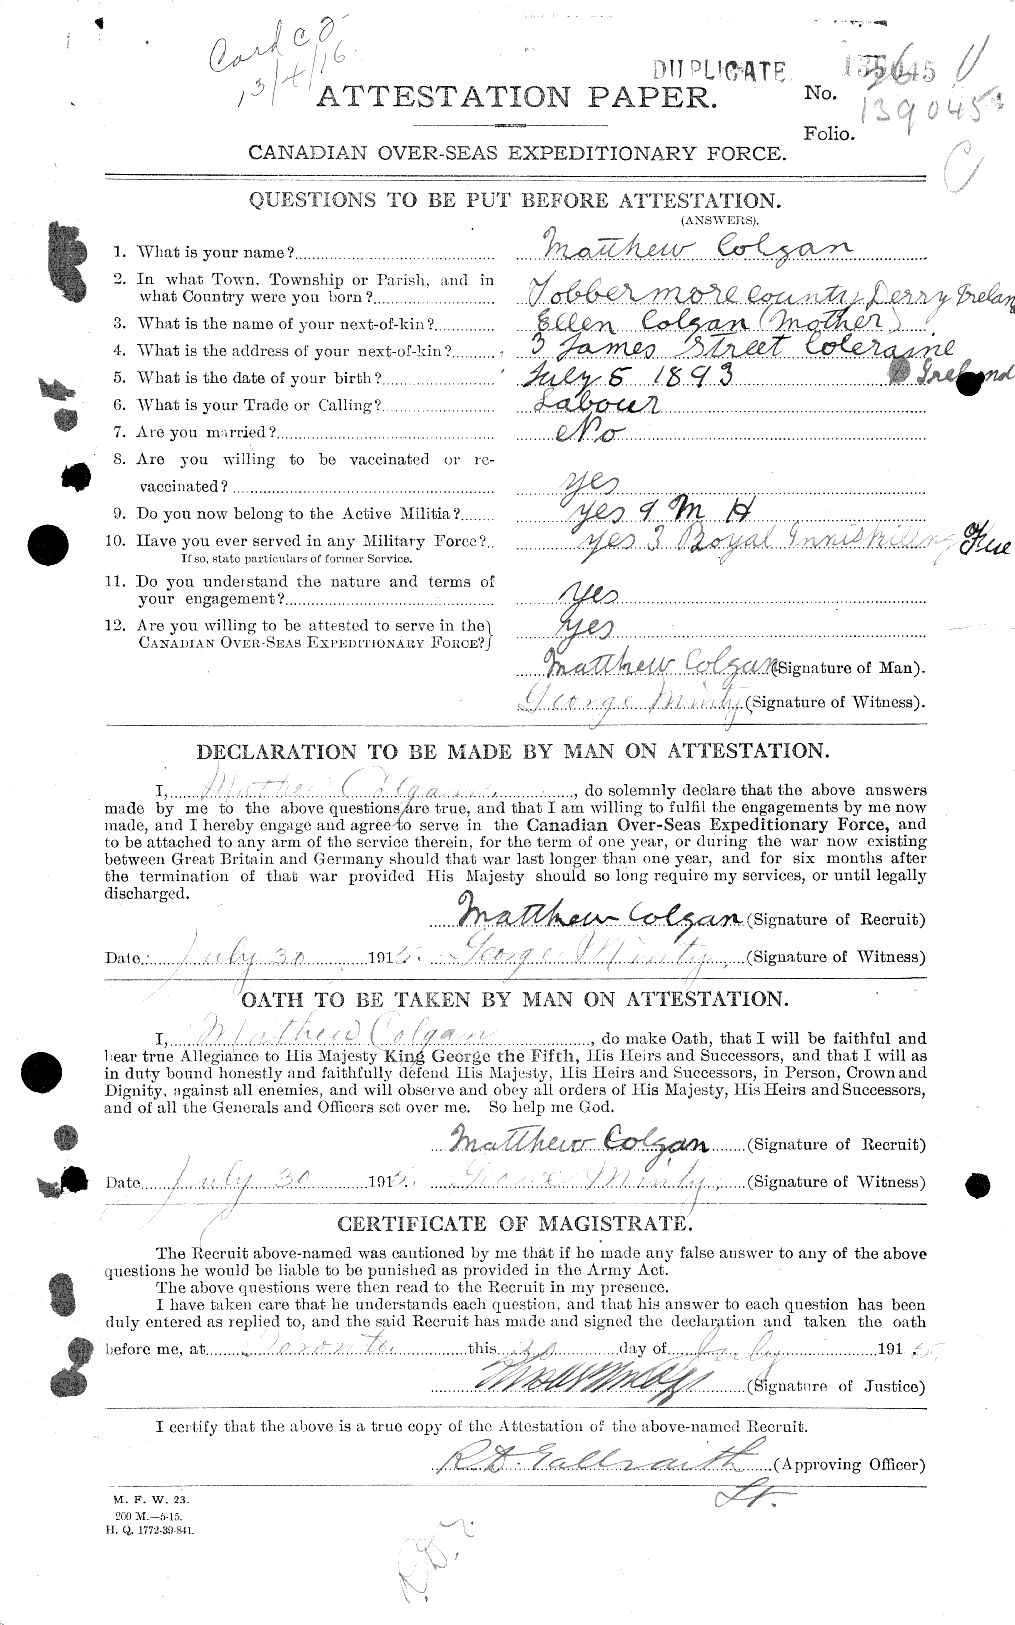 Dossiers du Personnel de la Première Guerre mondiale - CEC 028482a